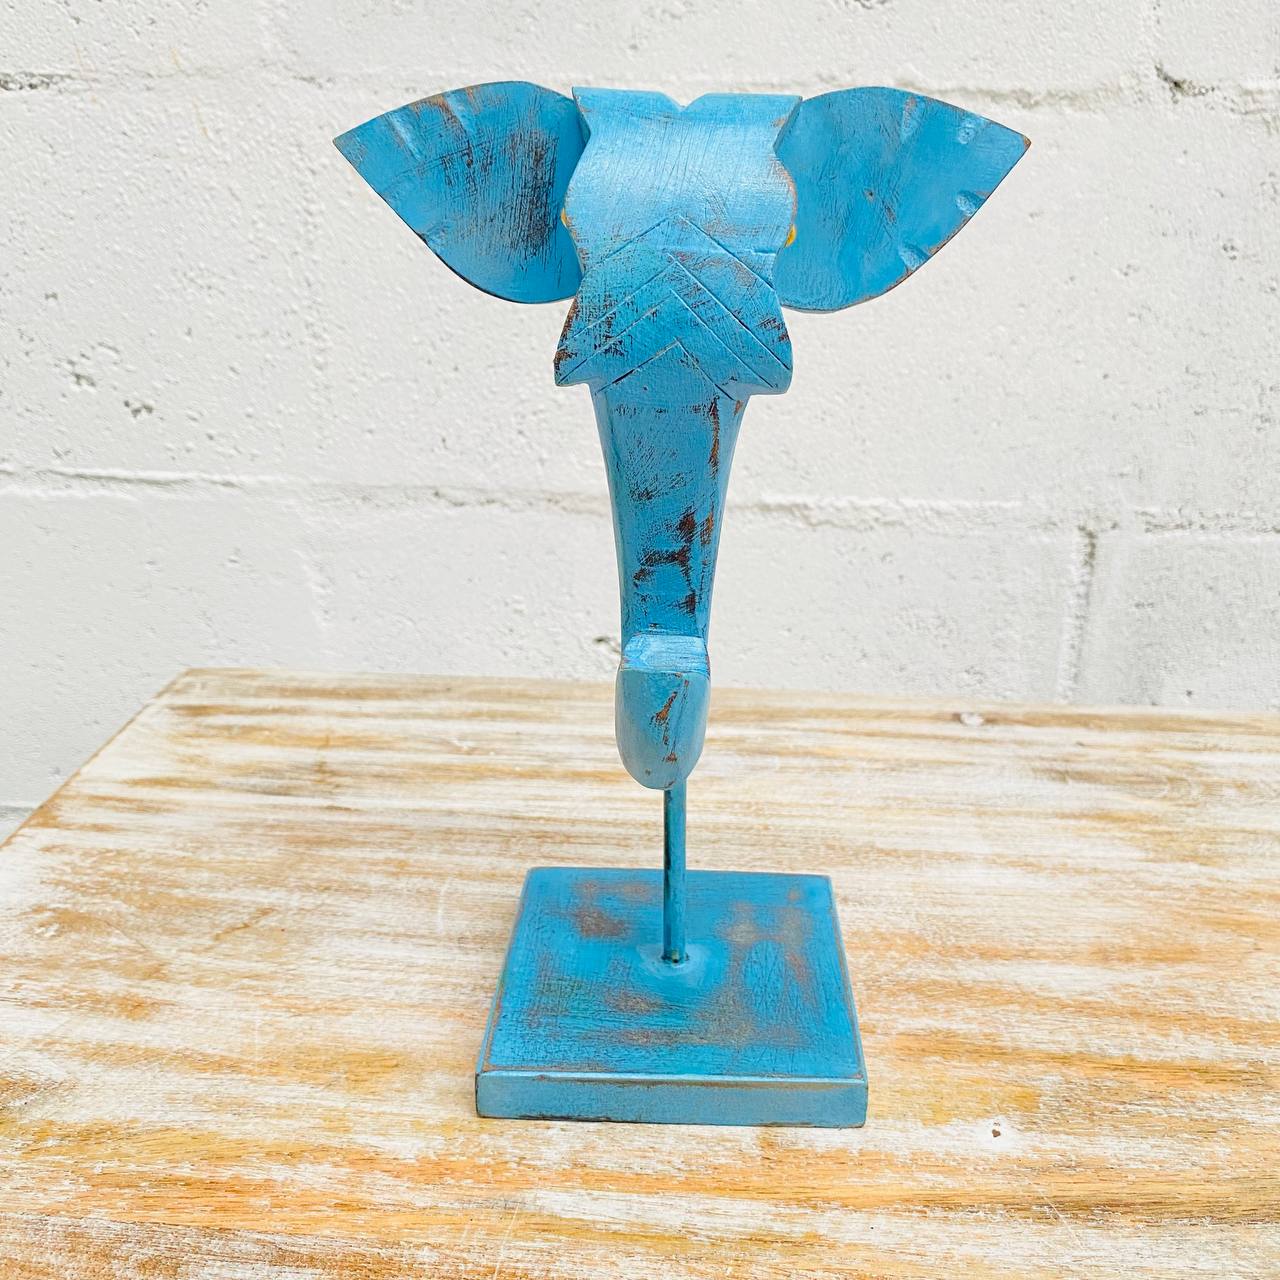 Figura de Elefante "Majestuosidad Vintage" - Cabeza Tallada y Pintada a Mano en Madera con Diseño de Estilo Vintage